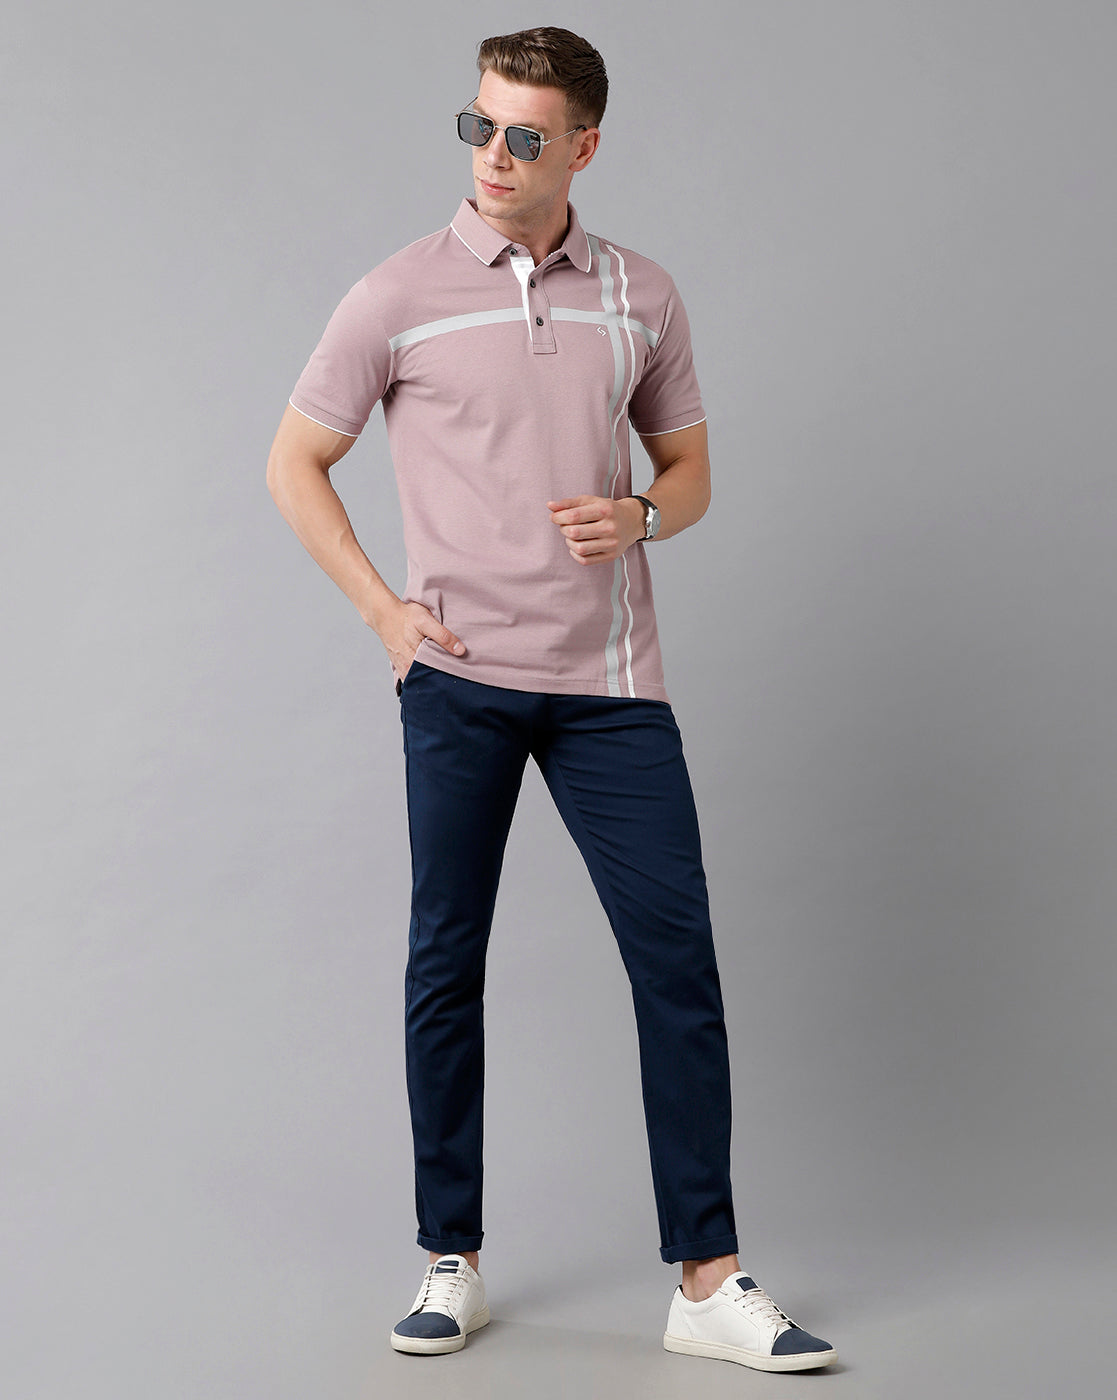 Classic Polo Men's Cotton Printed Half Sleeve Slim Fit Polo Neck Lavendar Color T-Shirt | Prm - 713 B